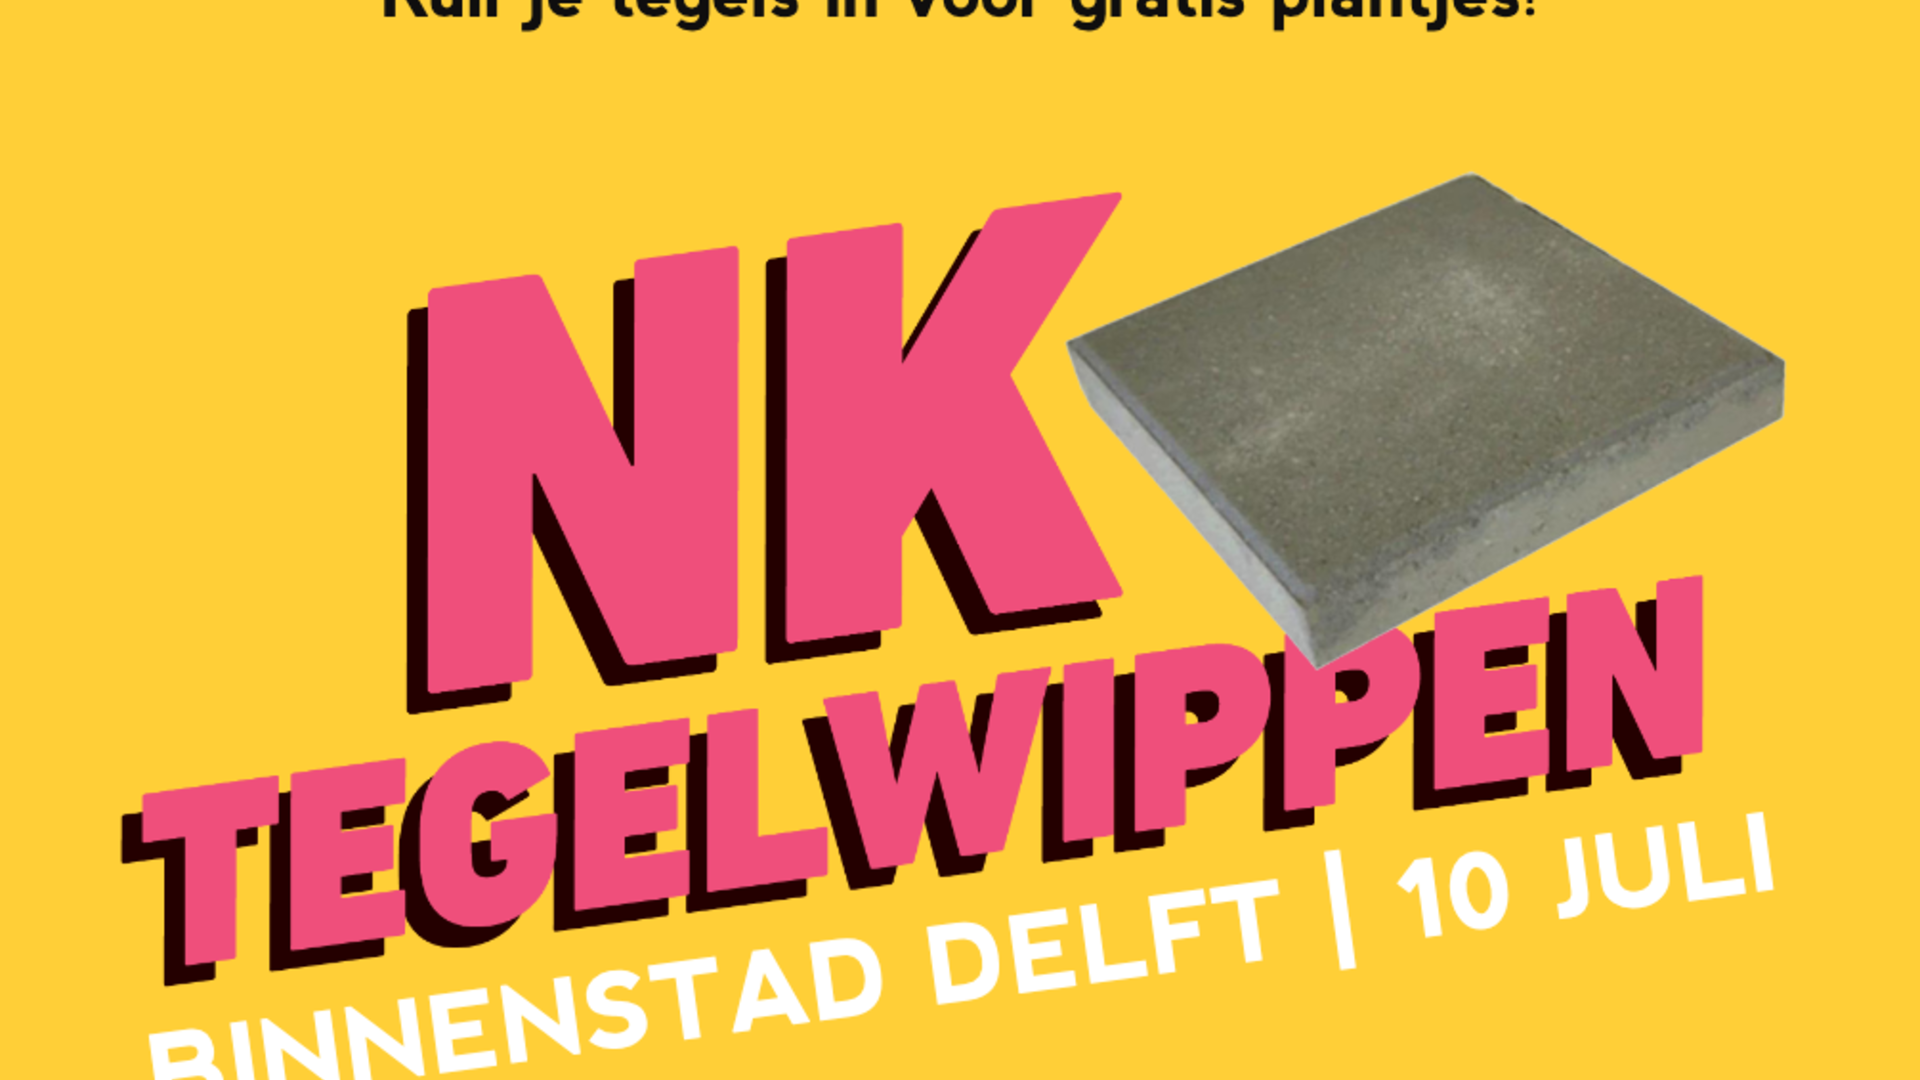 Roze en zwarte letters op een gele achtergrond: "Ruil je tegels in voor gratis plantjes! NK Tegelwippen: Binnenstad Delft | 10 juni